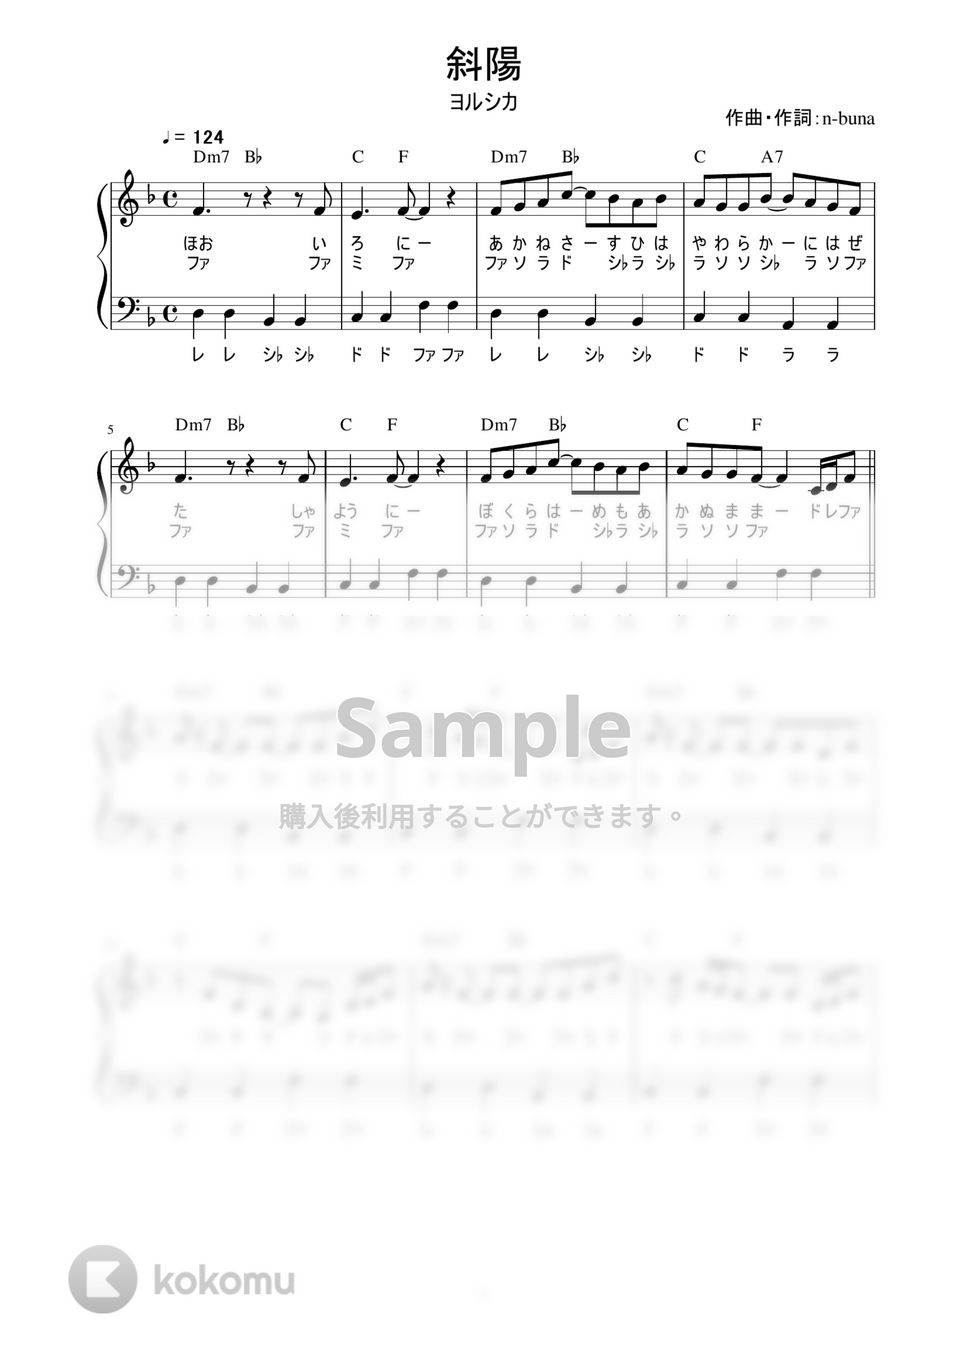 ヨルシカ - 斜陽 (かんたん / 歌詞付き / ドレミ付き / 初心者) by piano.tokyo